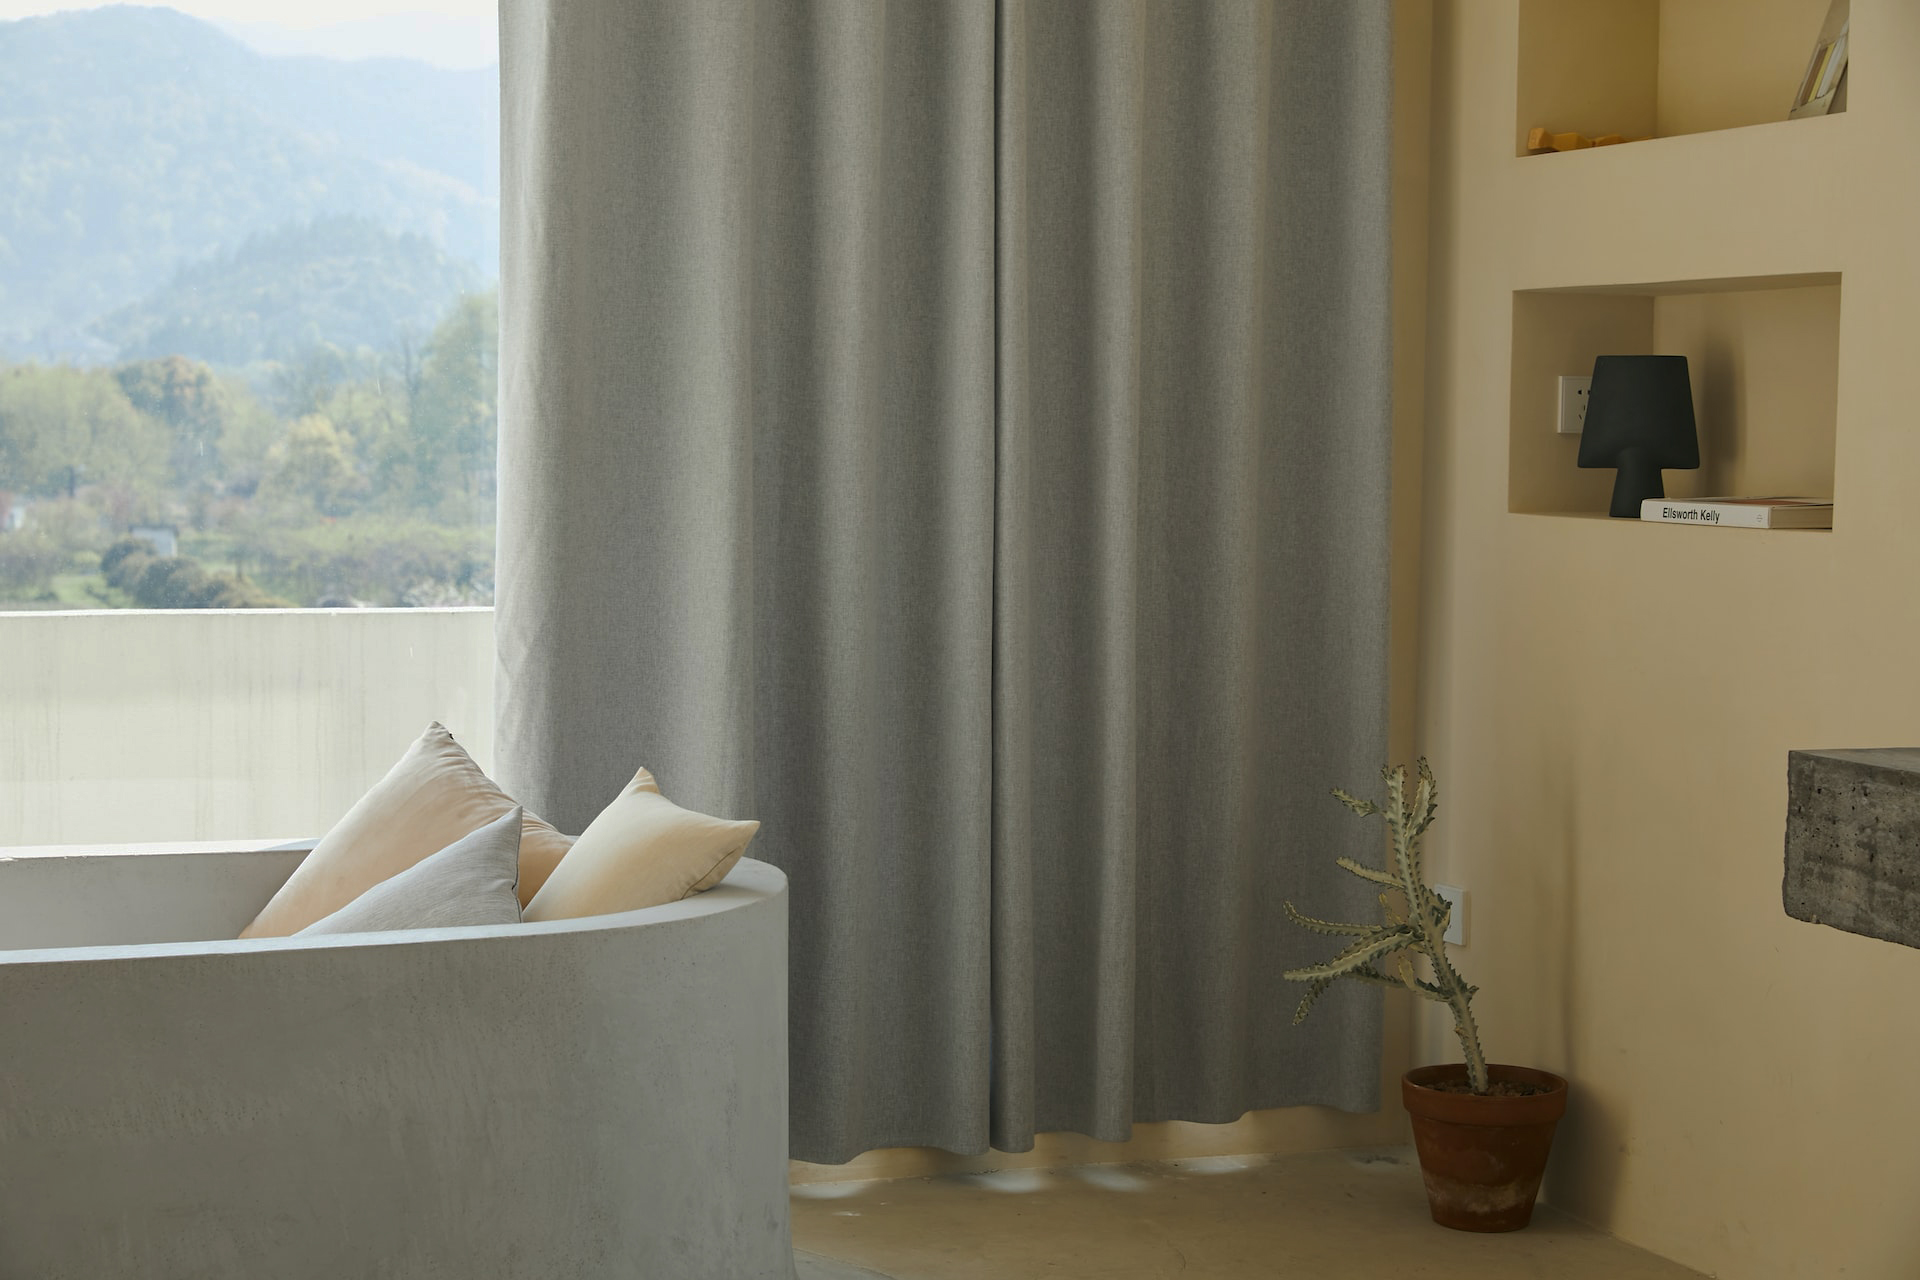 傳統布窗簾(三摺簾、蛇行簾)是經典的窗簾款式，透過各種布類材質來達到遮蔽隱私、調節溫度、阻隔光源之效果